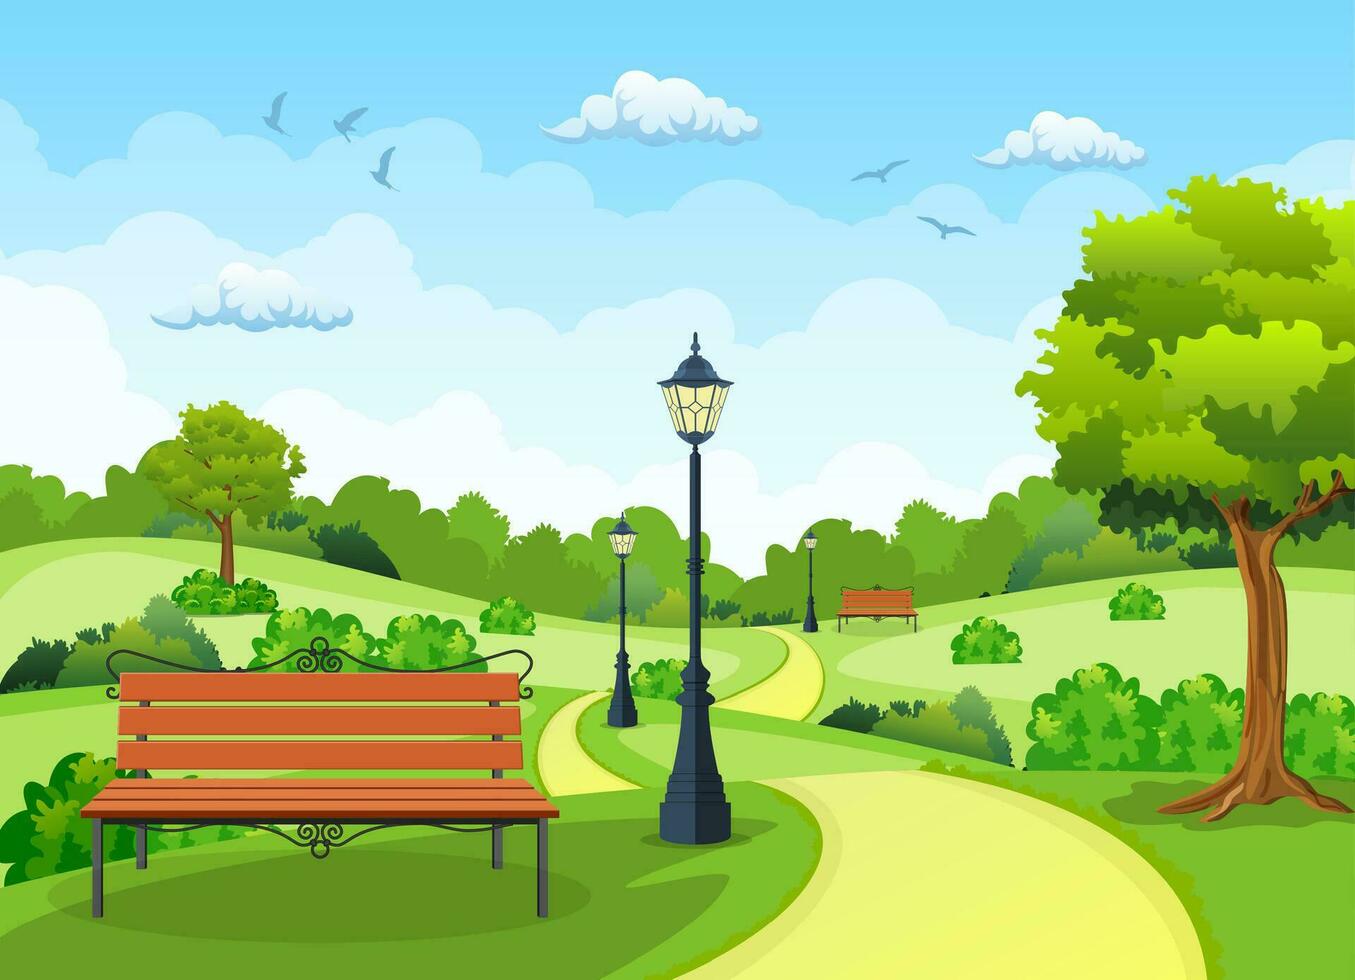 panchina con albero e lanterna nel il parco. vettore illustrazione nel piatto stile